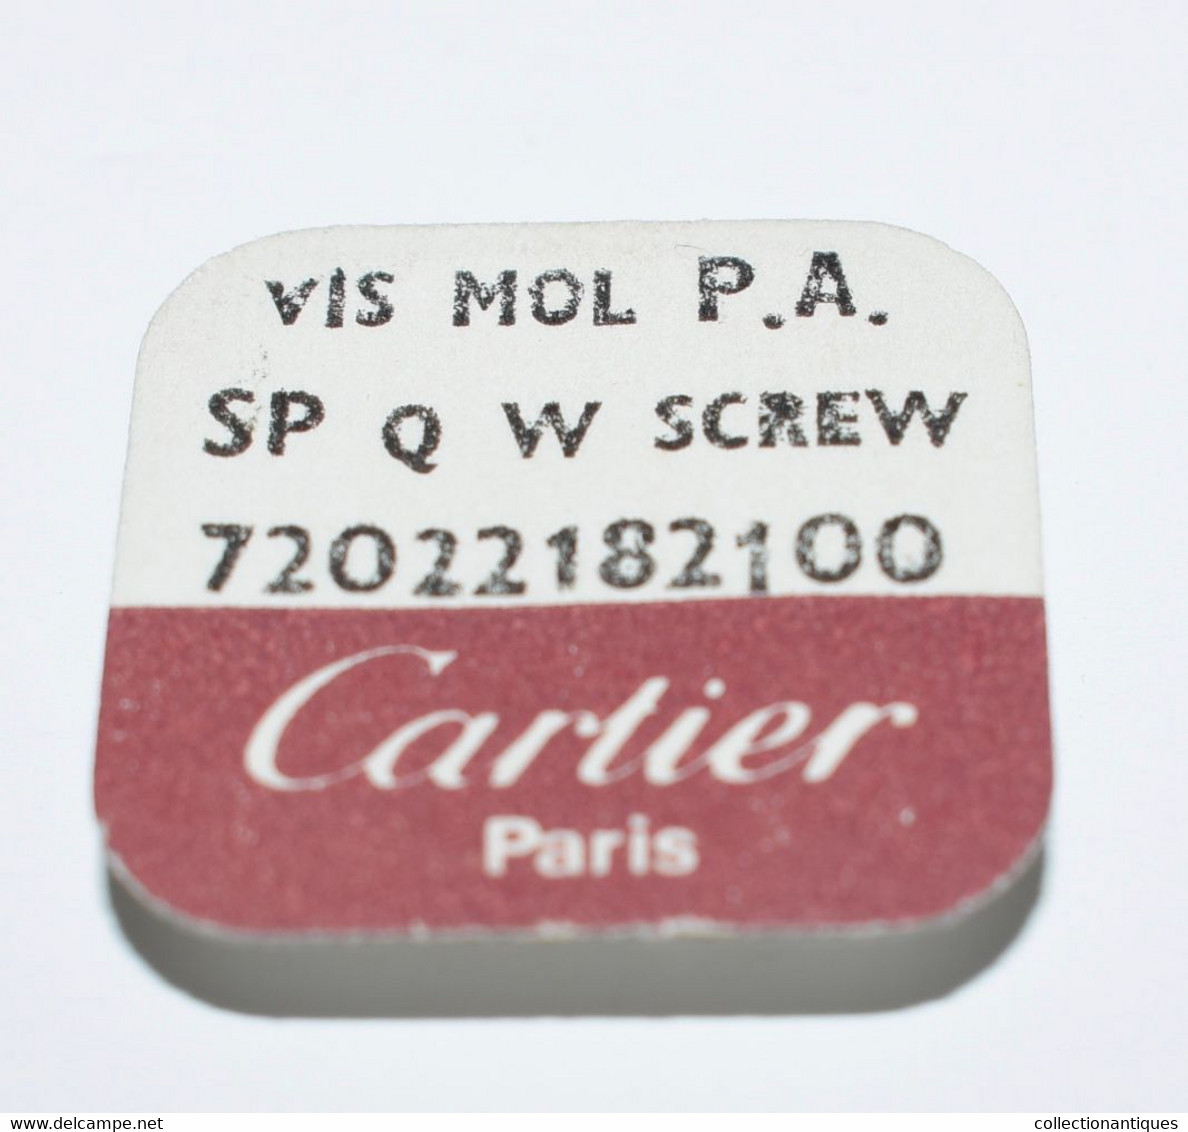 Cartier 5 Vis Mol Plaqué Argent - SP Q W Screw 72022182100 - Zubehör